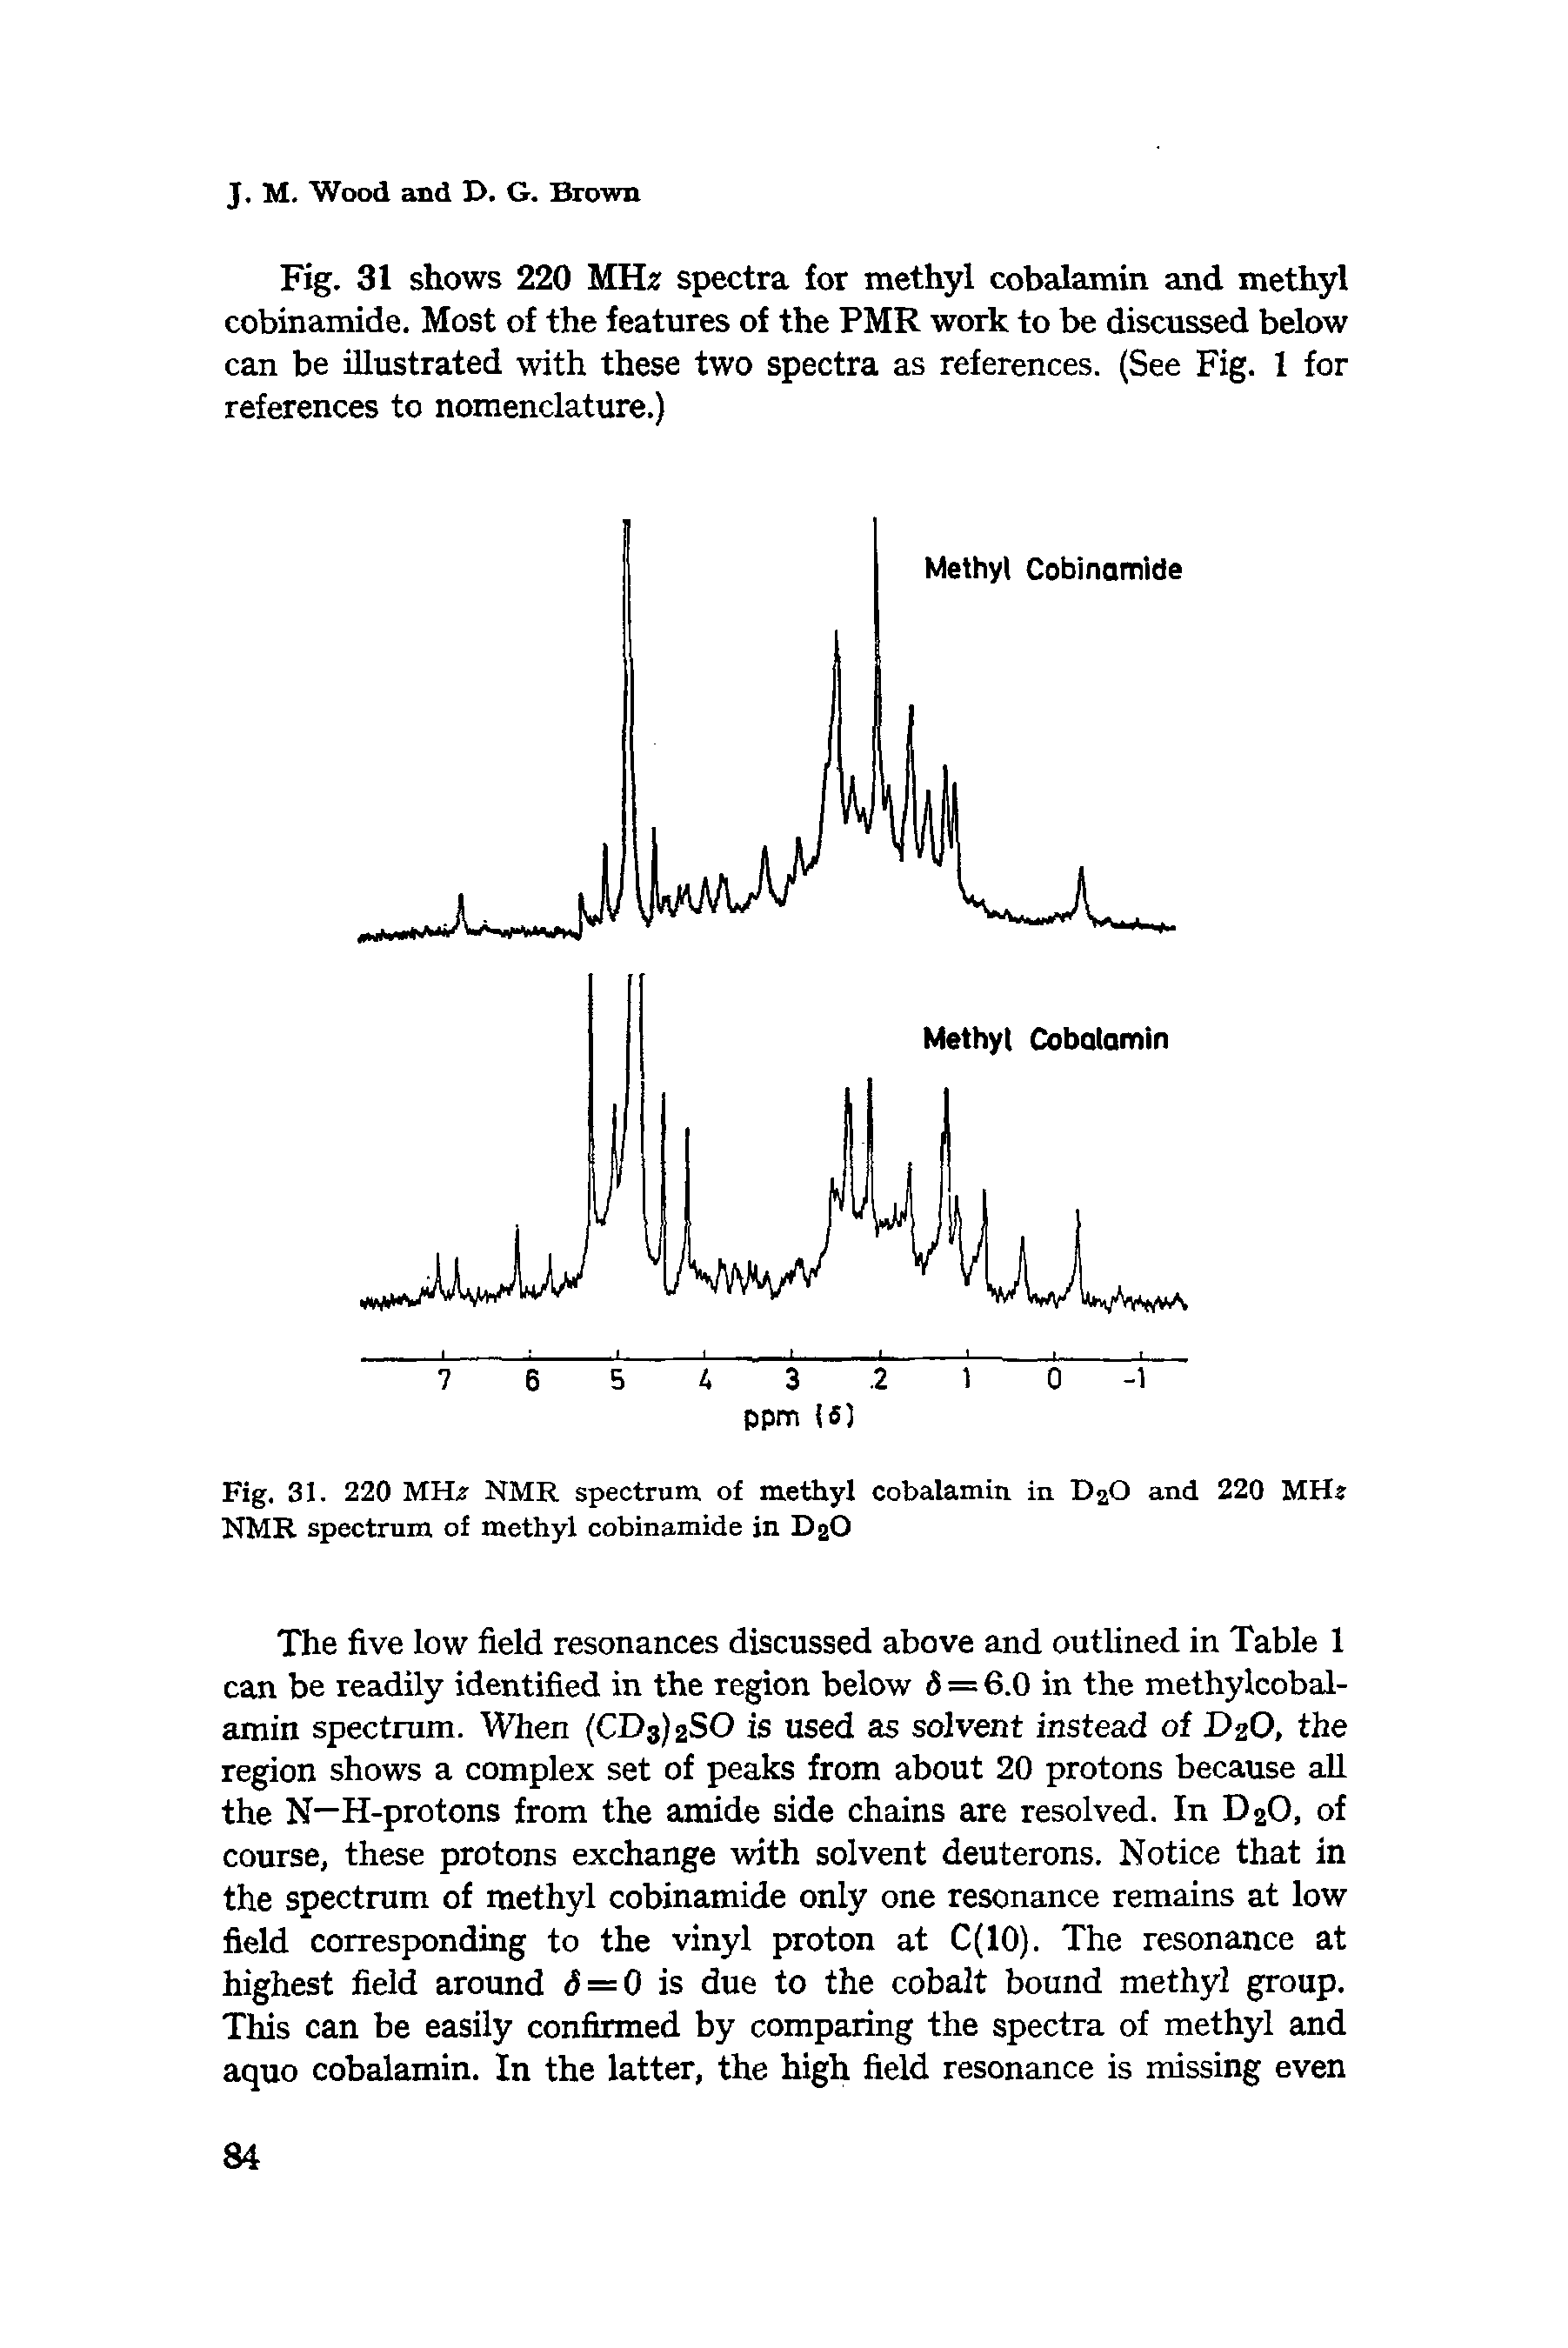 Fig. 31. 220 MHz NMR spectrum of methyl cobalamin in DaO and 220 MHz NMR spectrum of methyl cobinamide in D2O...